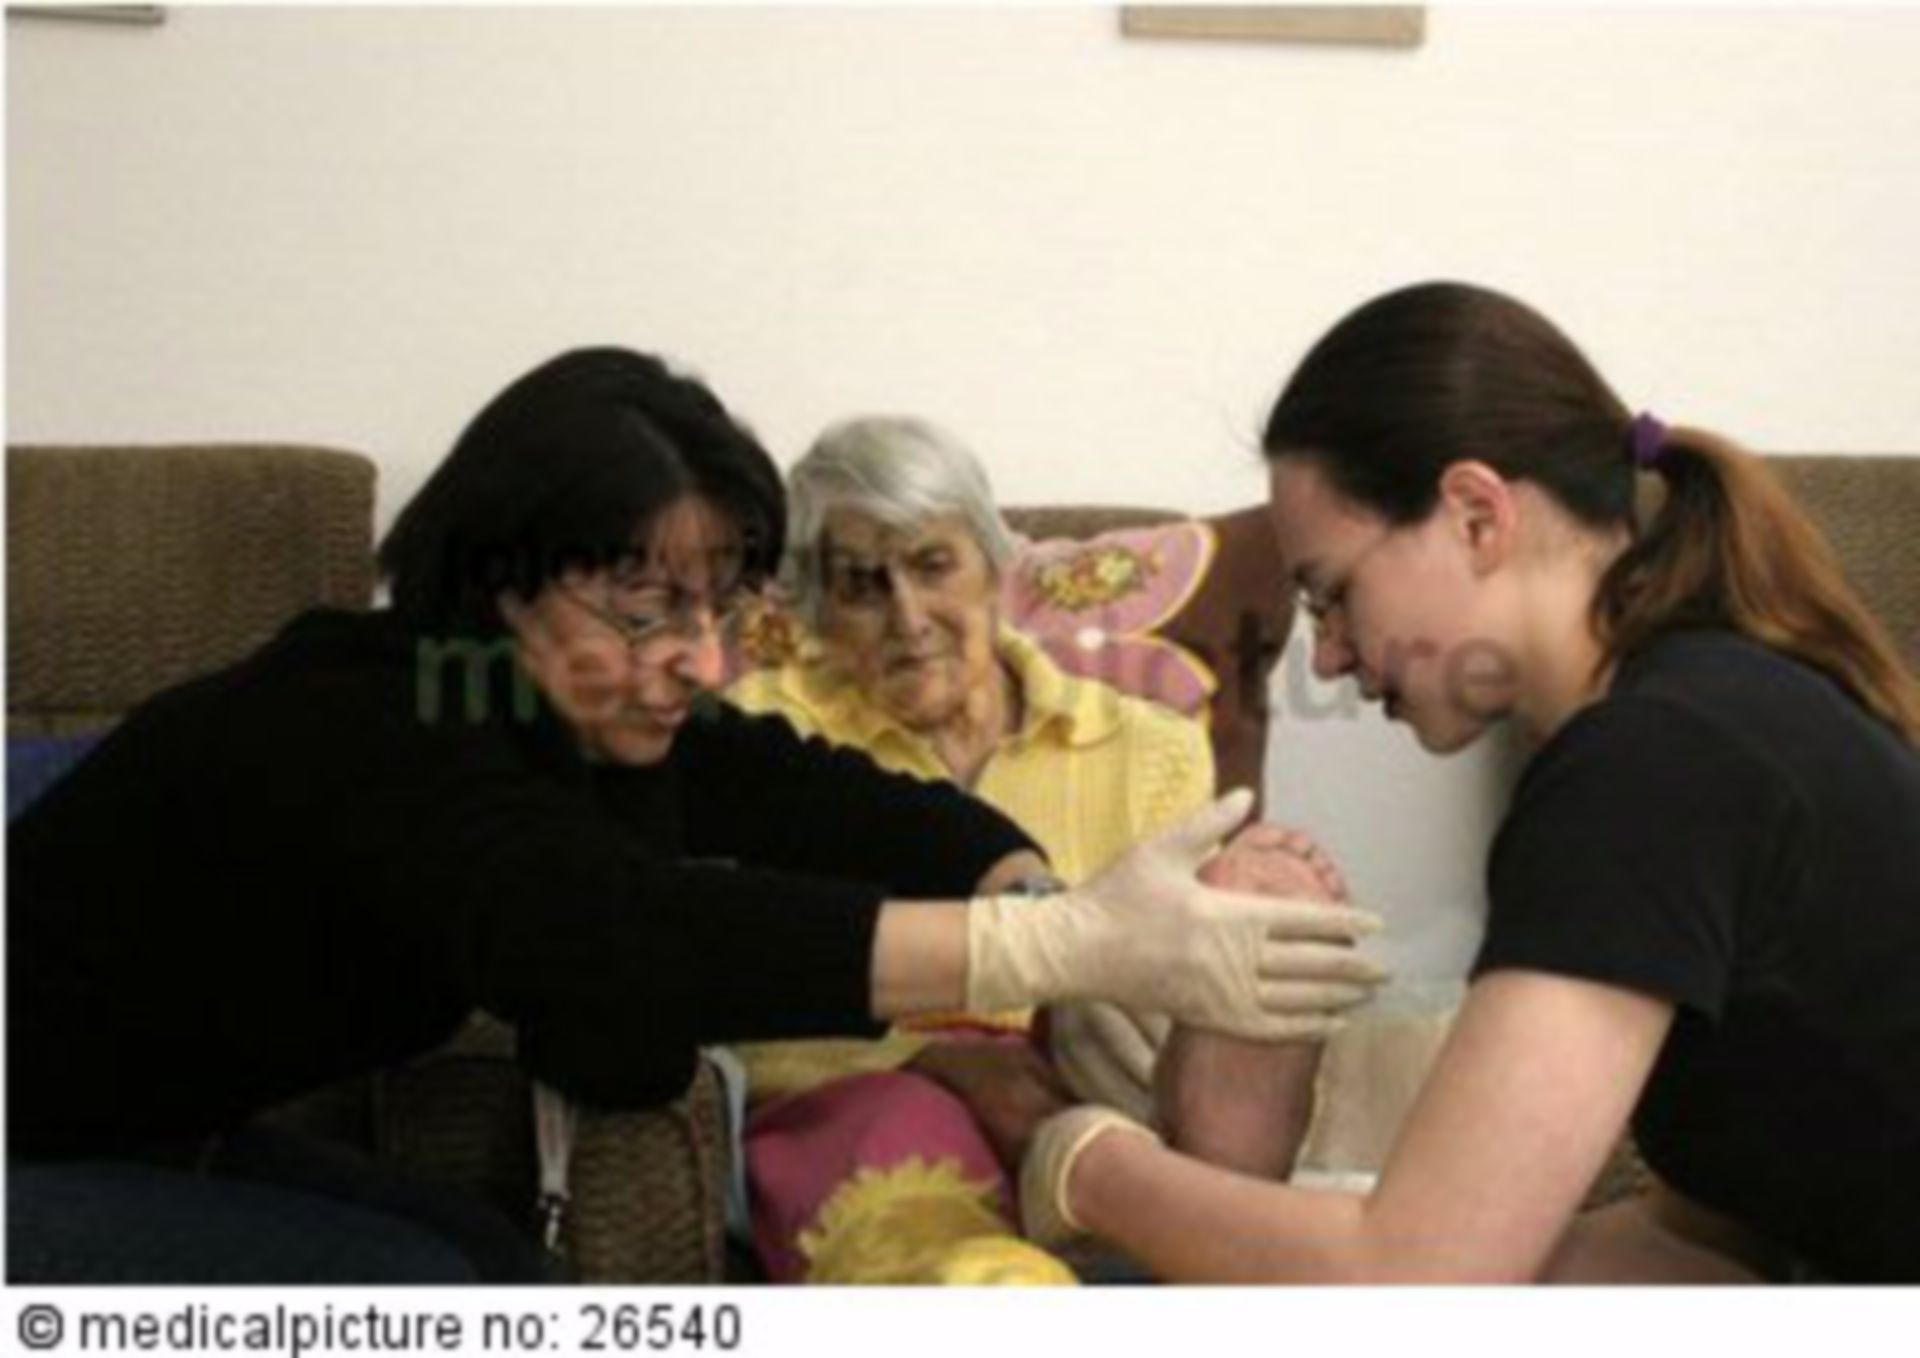 Altenpflege, elderly care